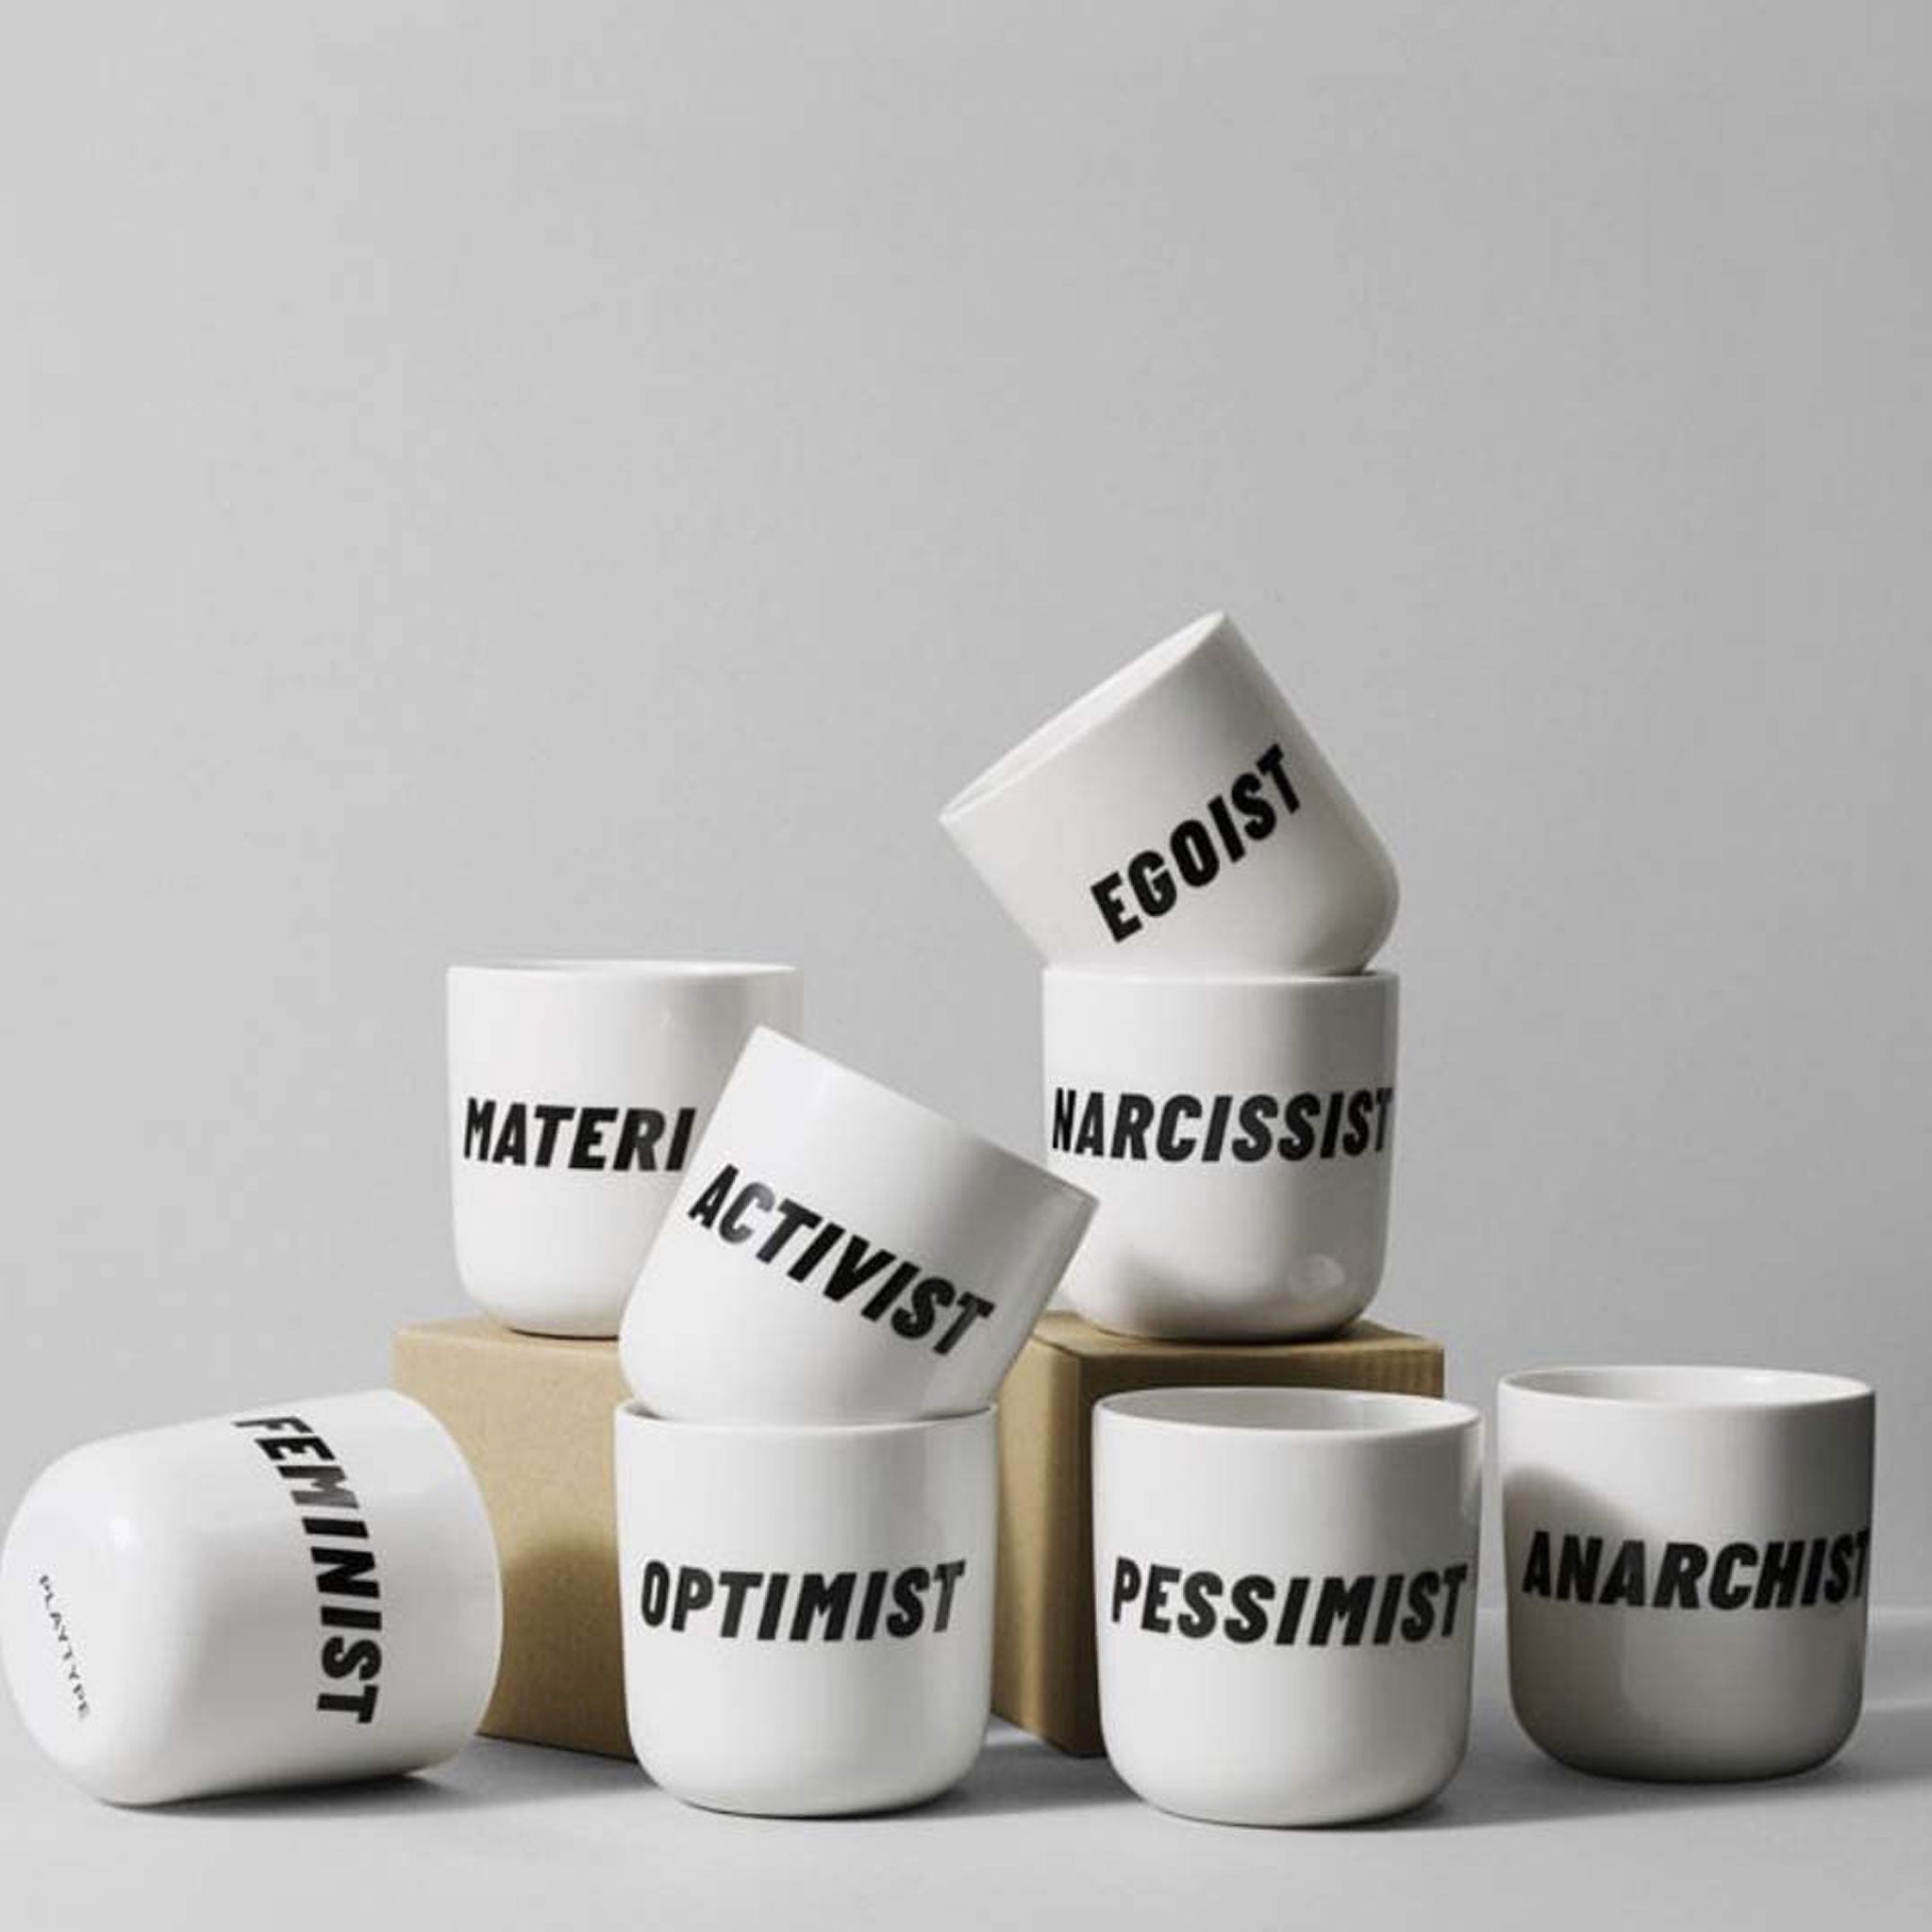 EGOIST | white coffee & tea MUG with black typo | Attitude Collection | PLTY